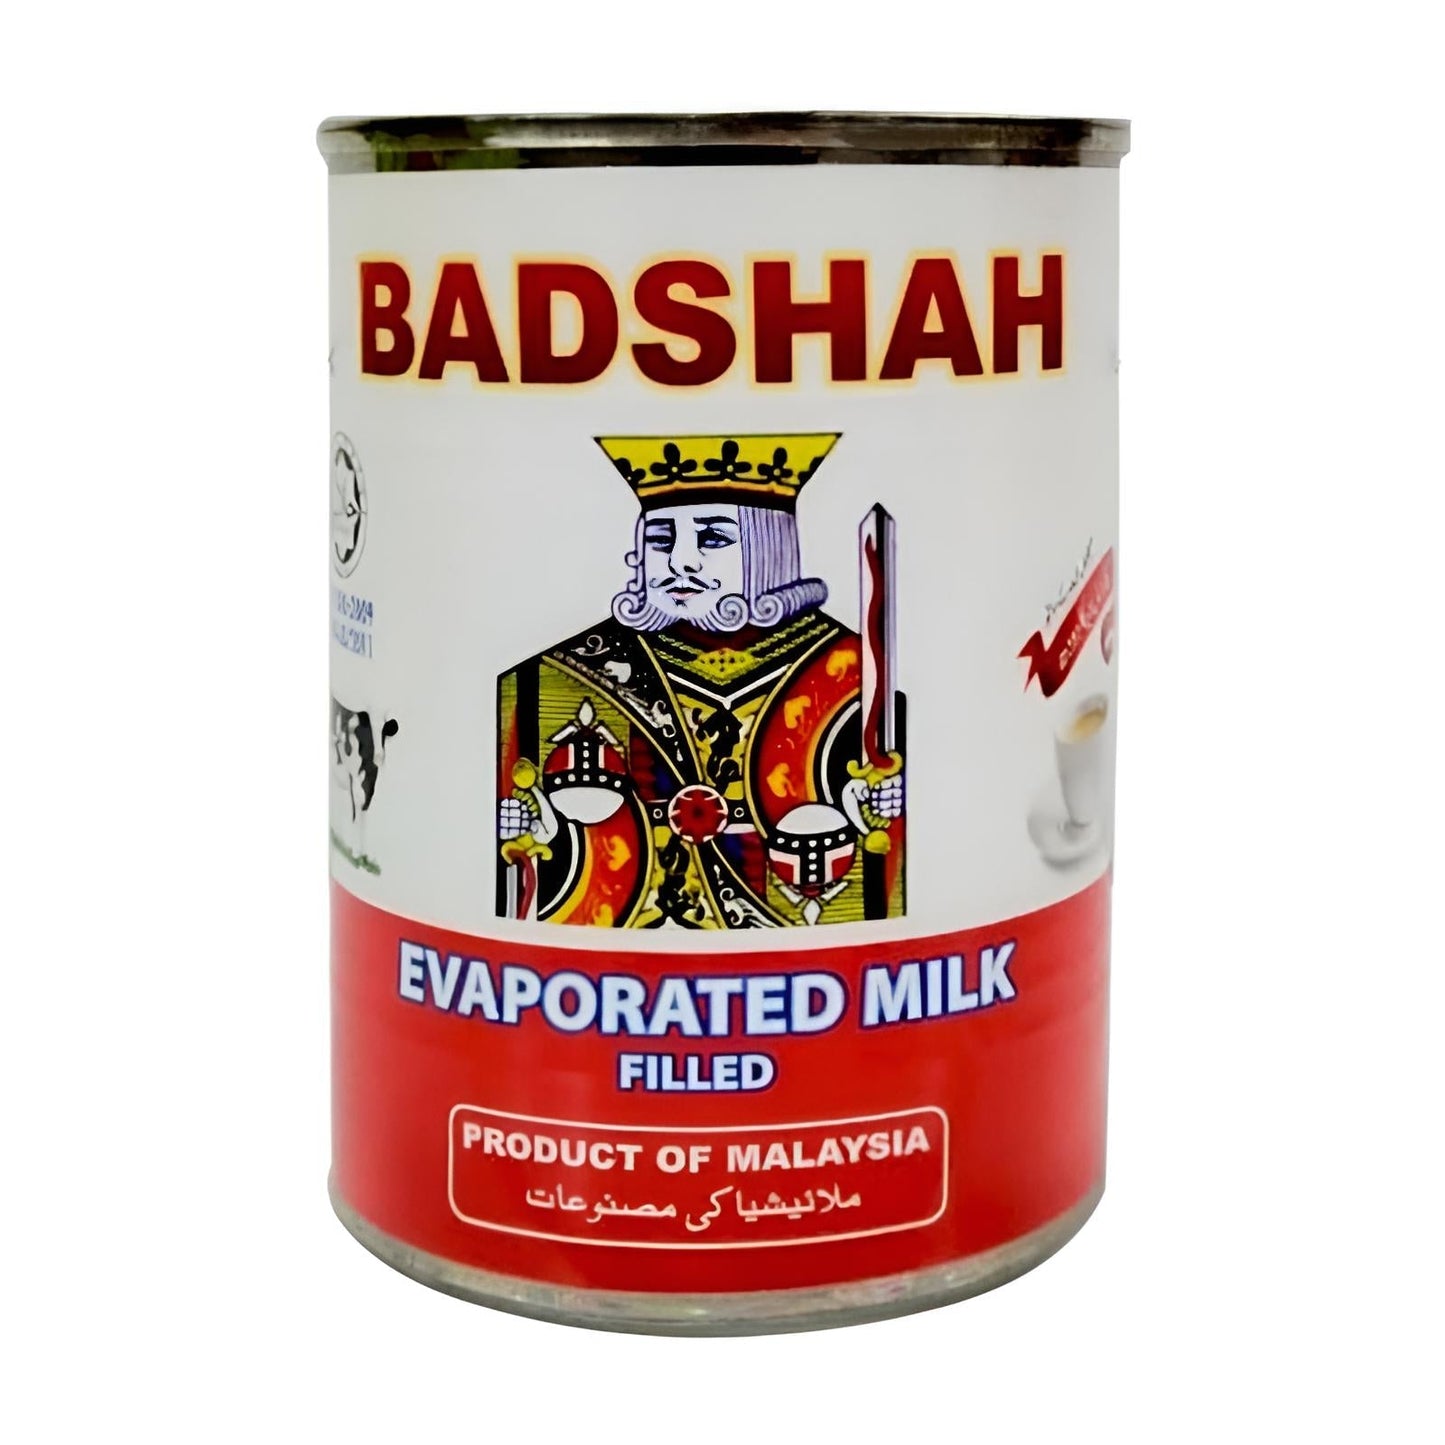 Badshah Evaporated Milk 390g